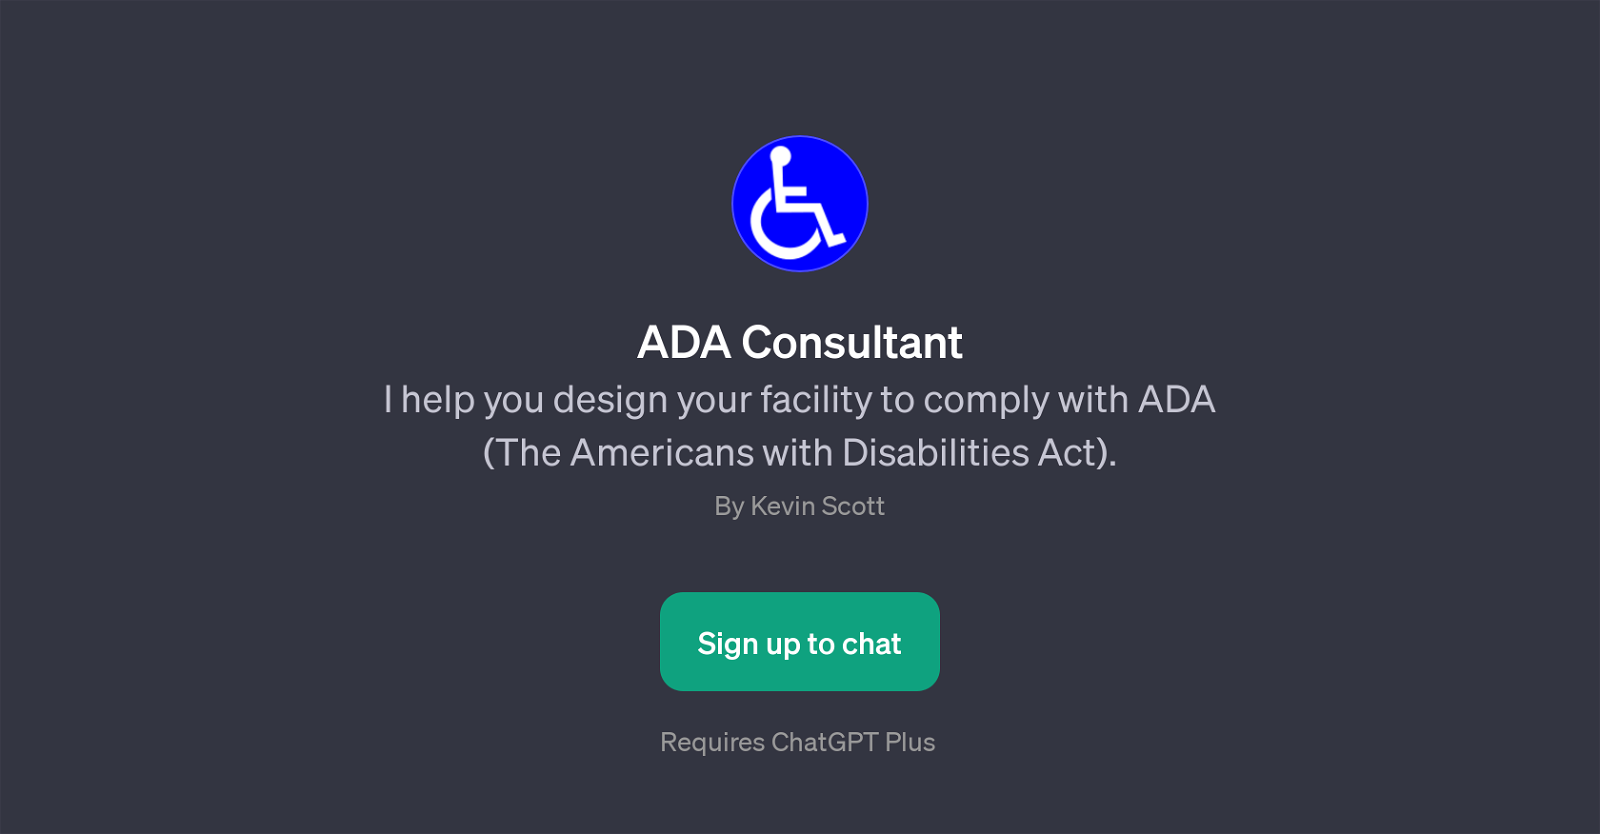 ADA Consultant website